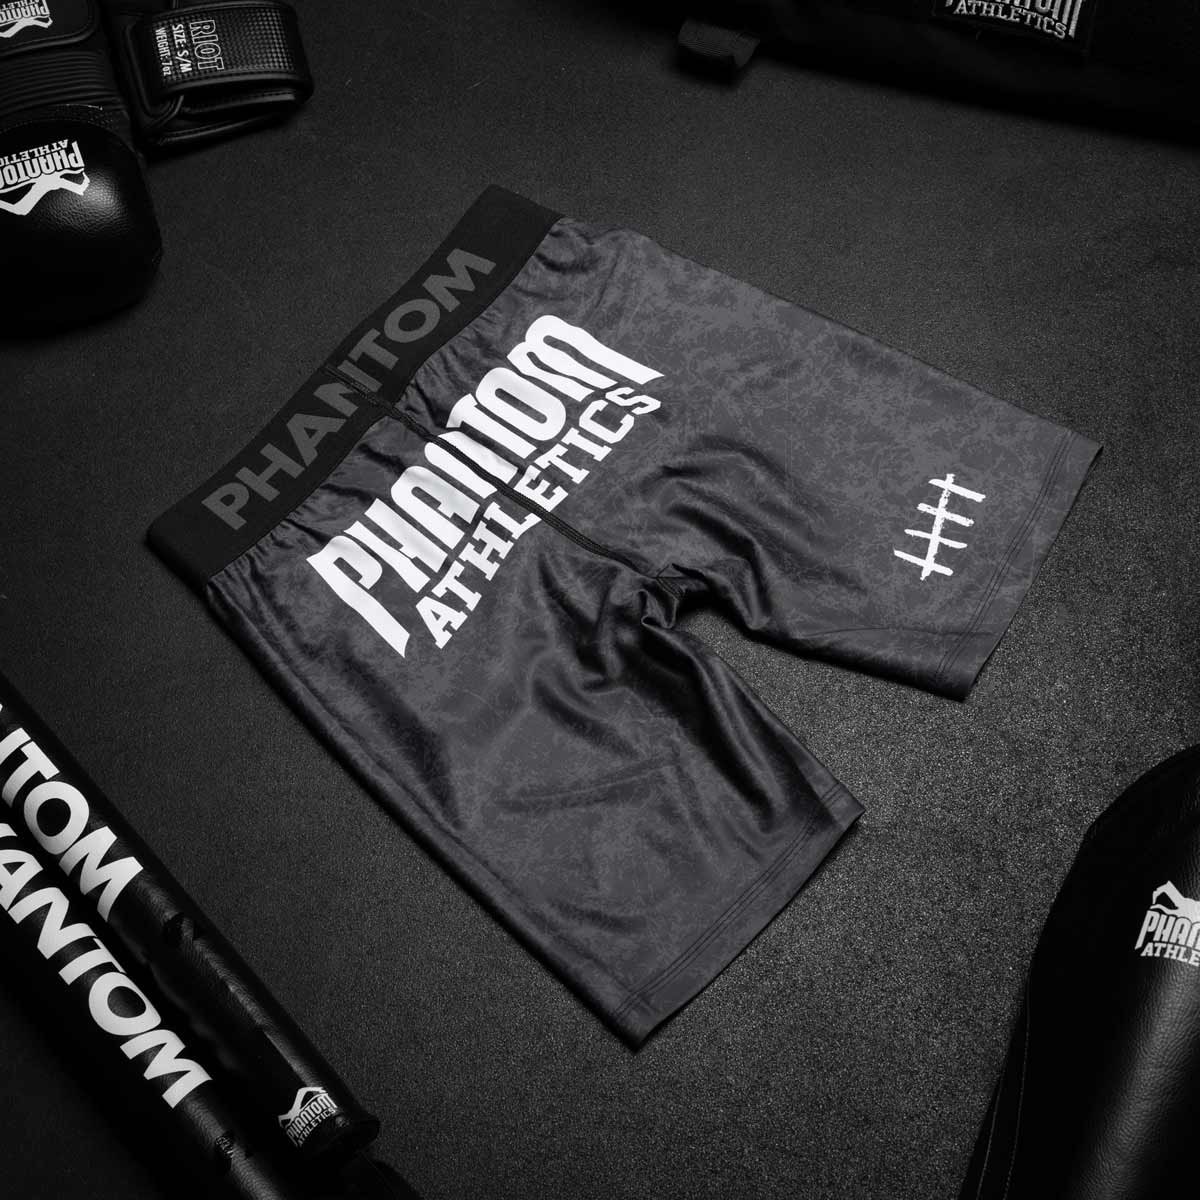 Die Phantom Vector Serious MMA Compression Fight Shorts im Smiley Design für deinen Kampfsport. Sie überzeugt durch perfekte Passform und Bewegungsfreiheit. 